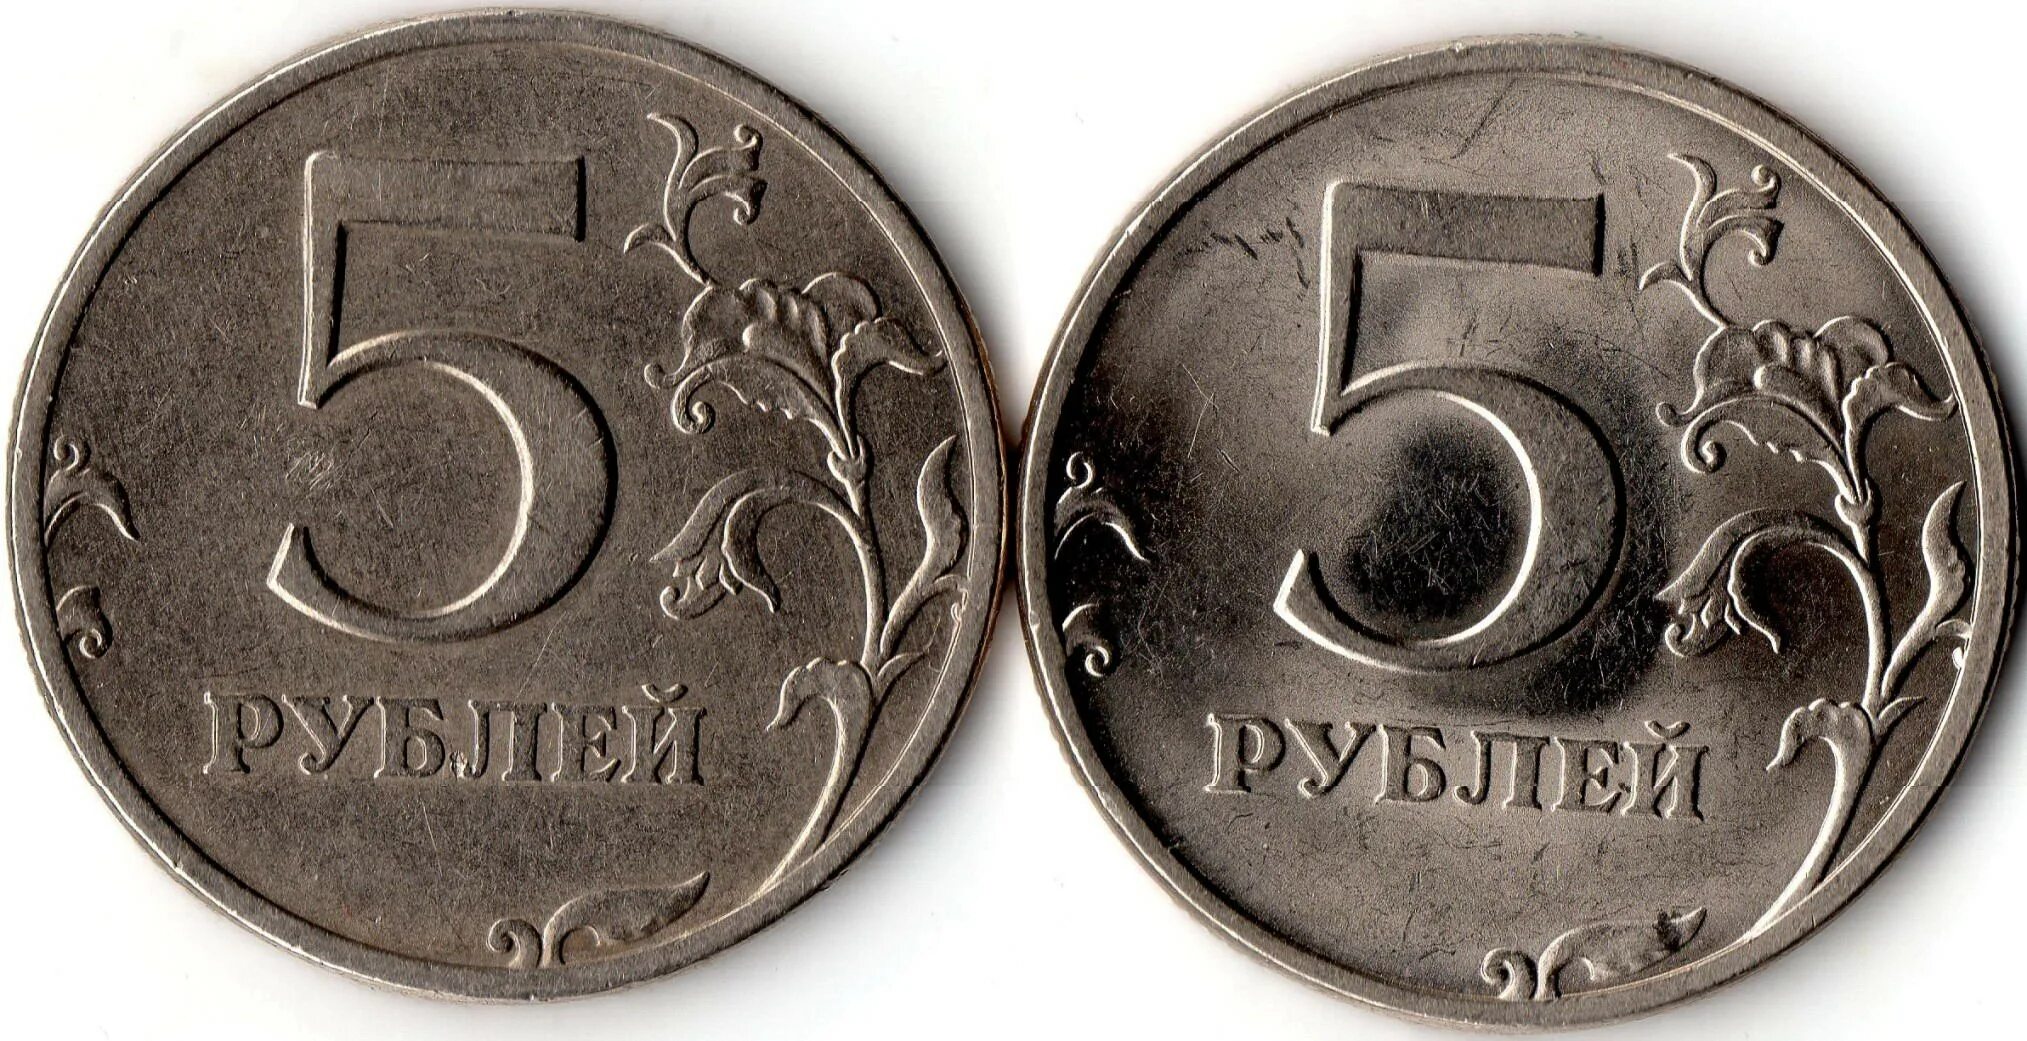 5 рублей 13 года. 5 Рублей 1998 СП. 5 Рублей 1998 СПМД -шт. 2.21-2.22. 5 Рублей СПМД 1997 штемпель 2.2.. 5 Рублей 1998 года СПМД.